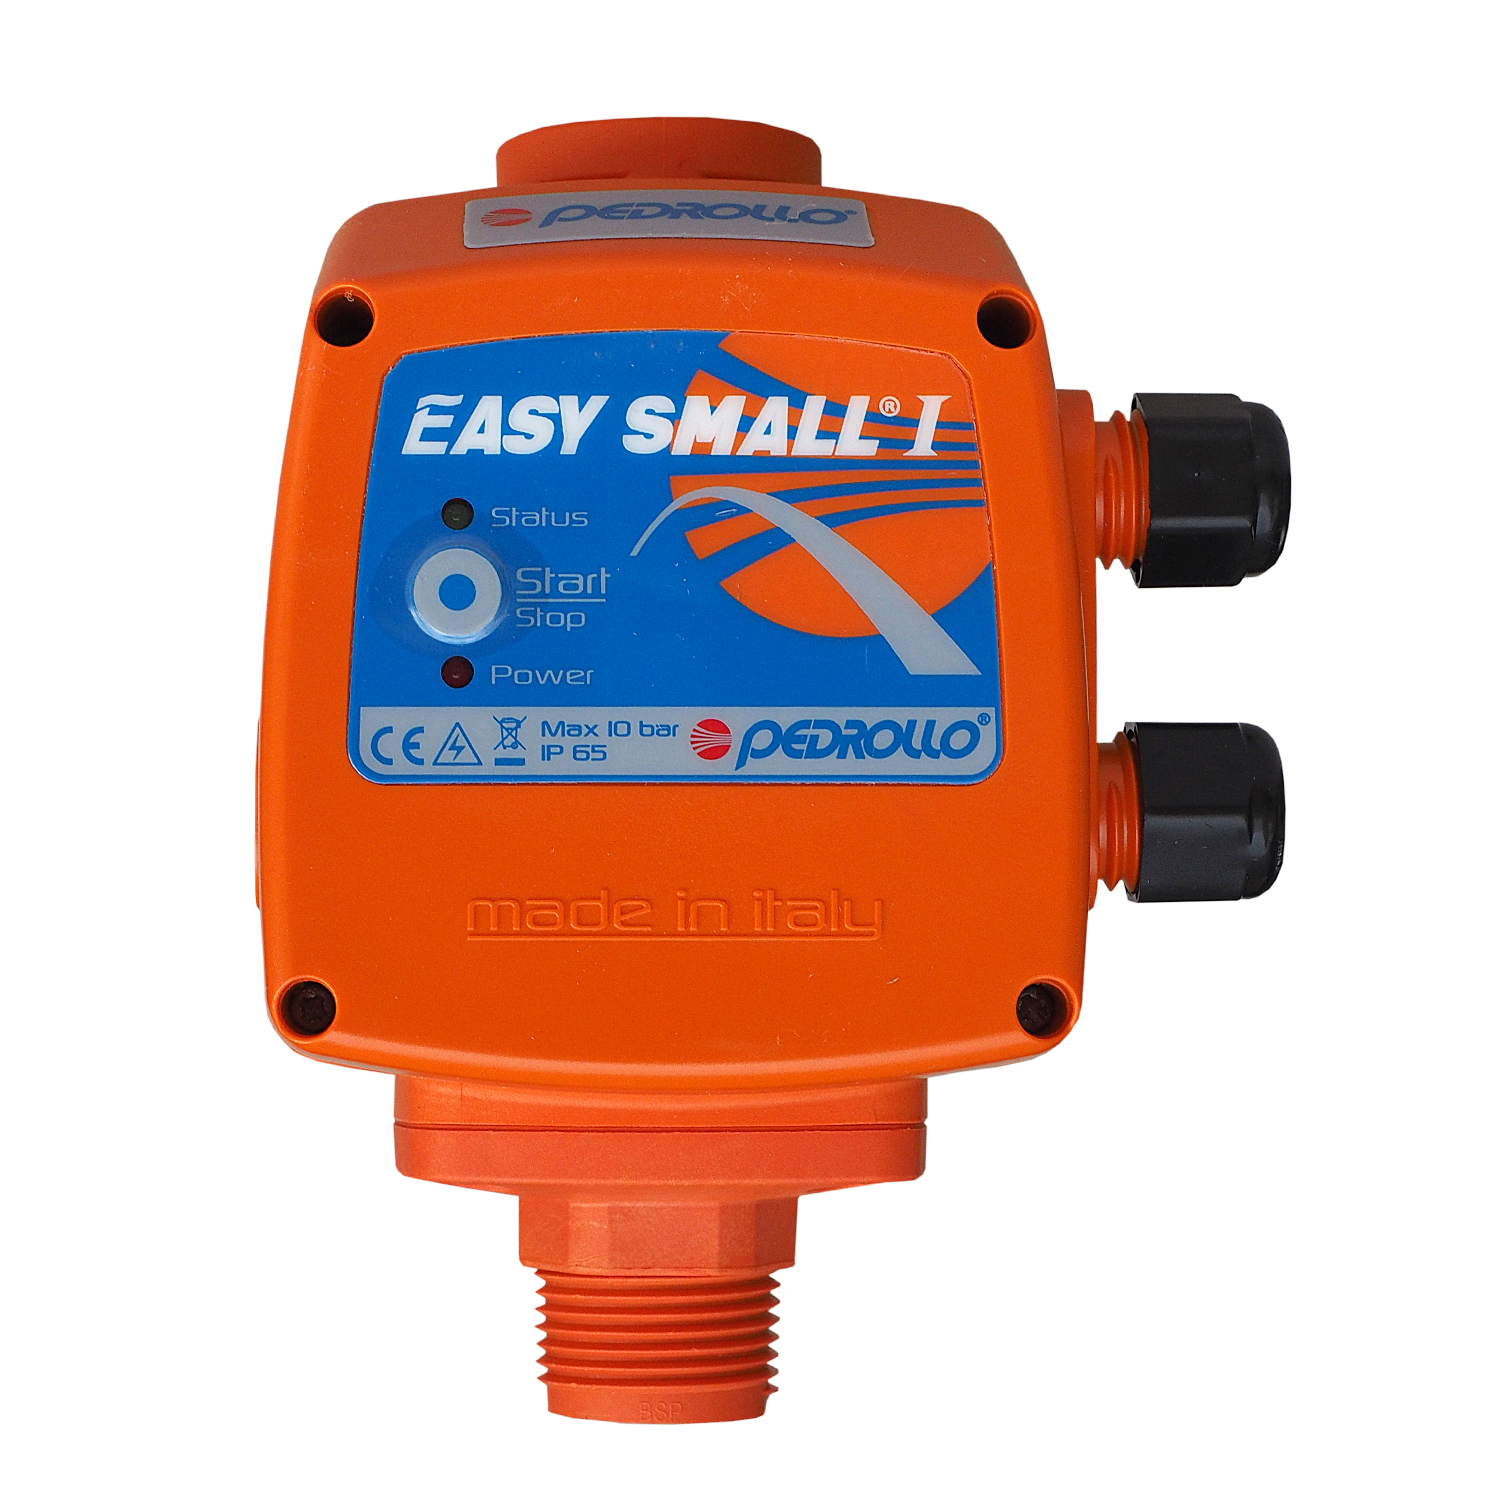 Presostat electronic pompa Pedrollo EasySmall 1